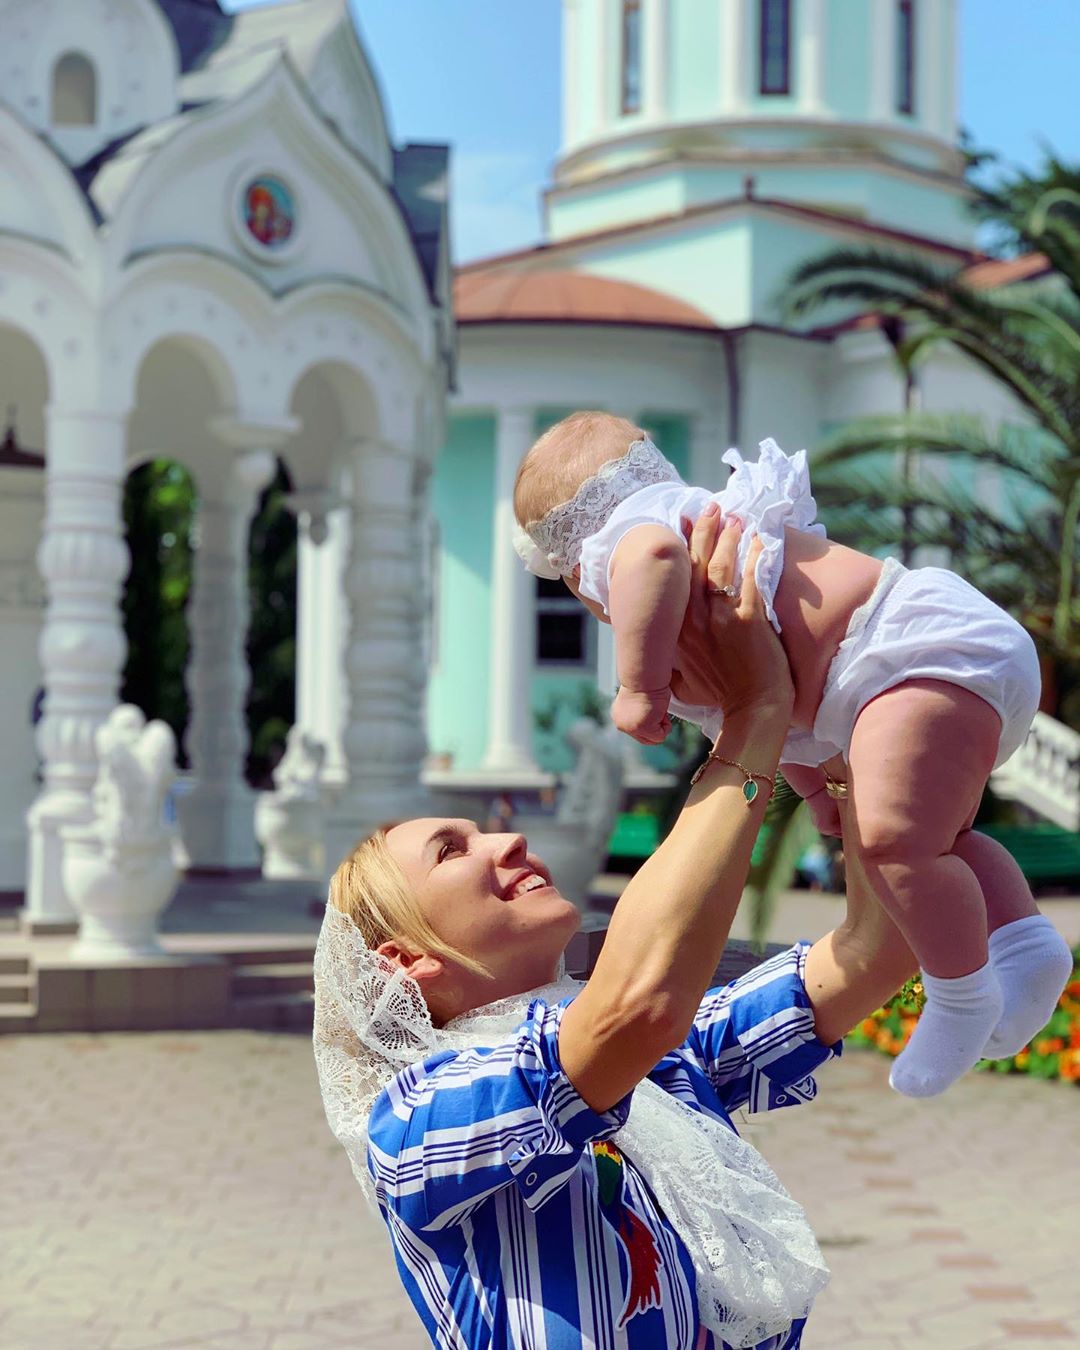 Елена Веснина опубликовала новое фото в Instagram